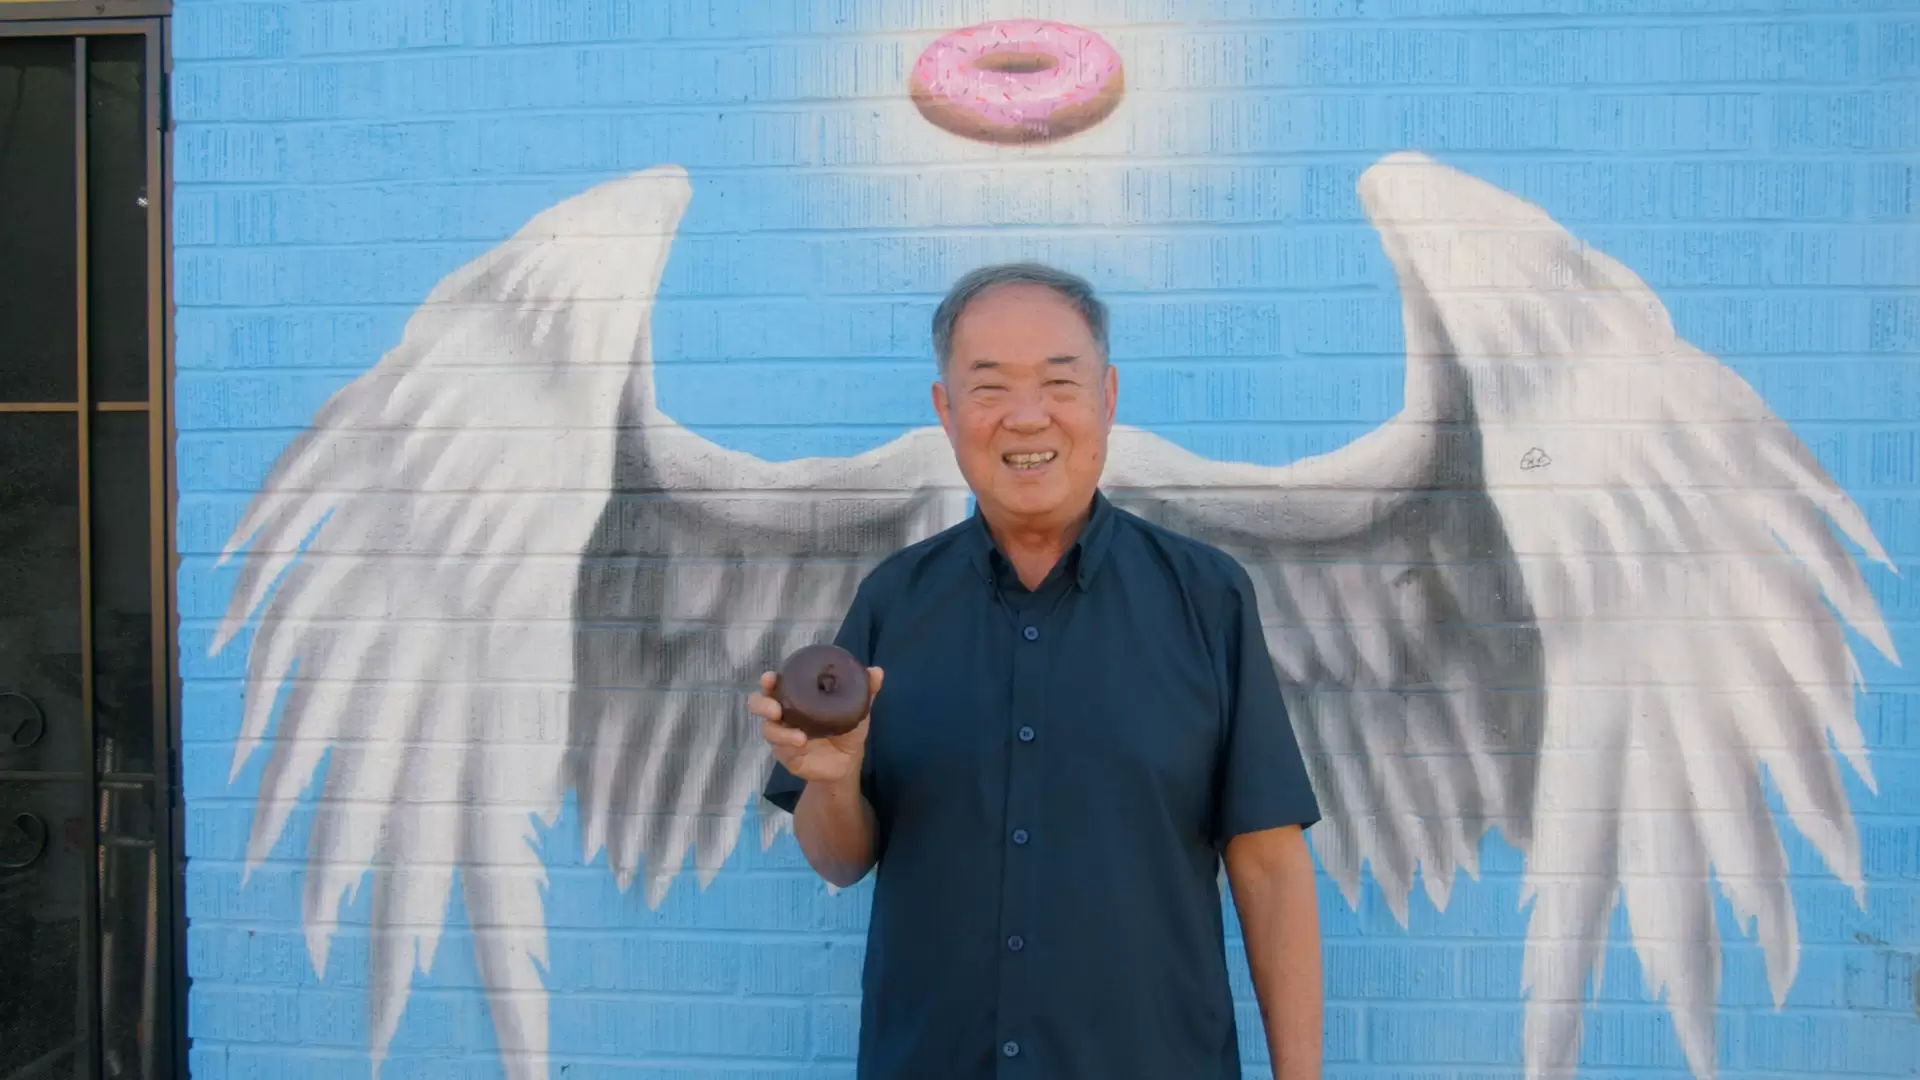 دانلود مستند The Donut King 2020 (پادشاه دونات)